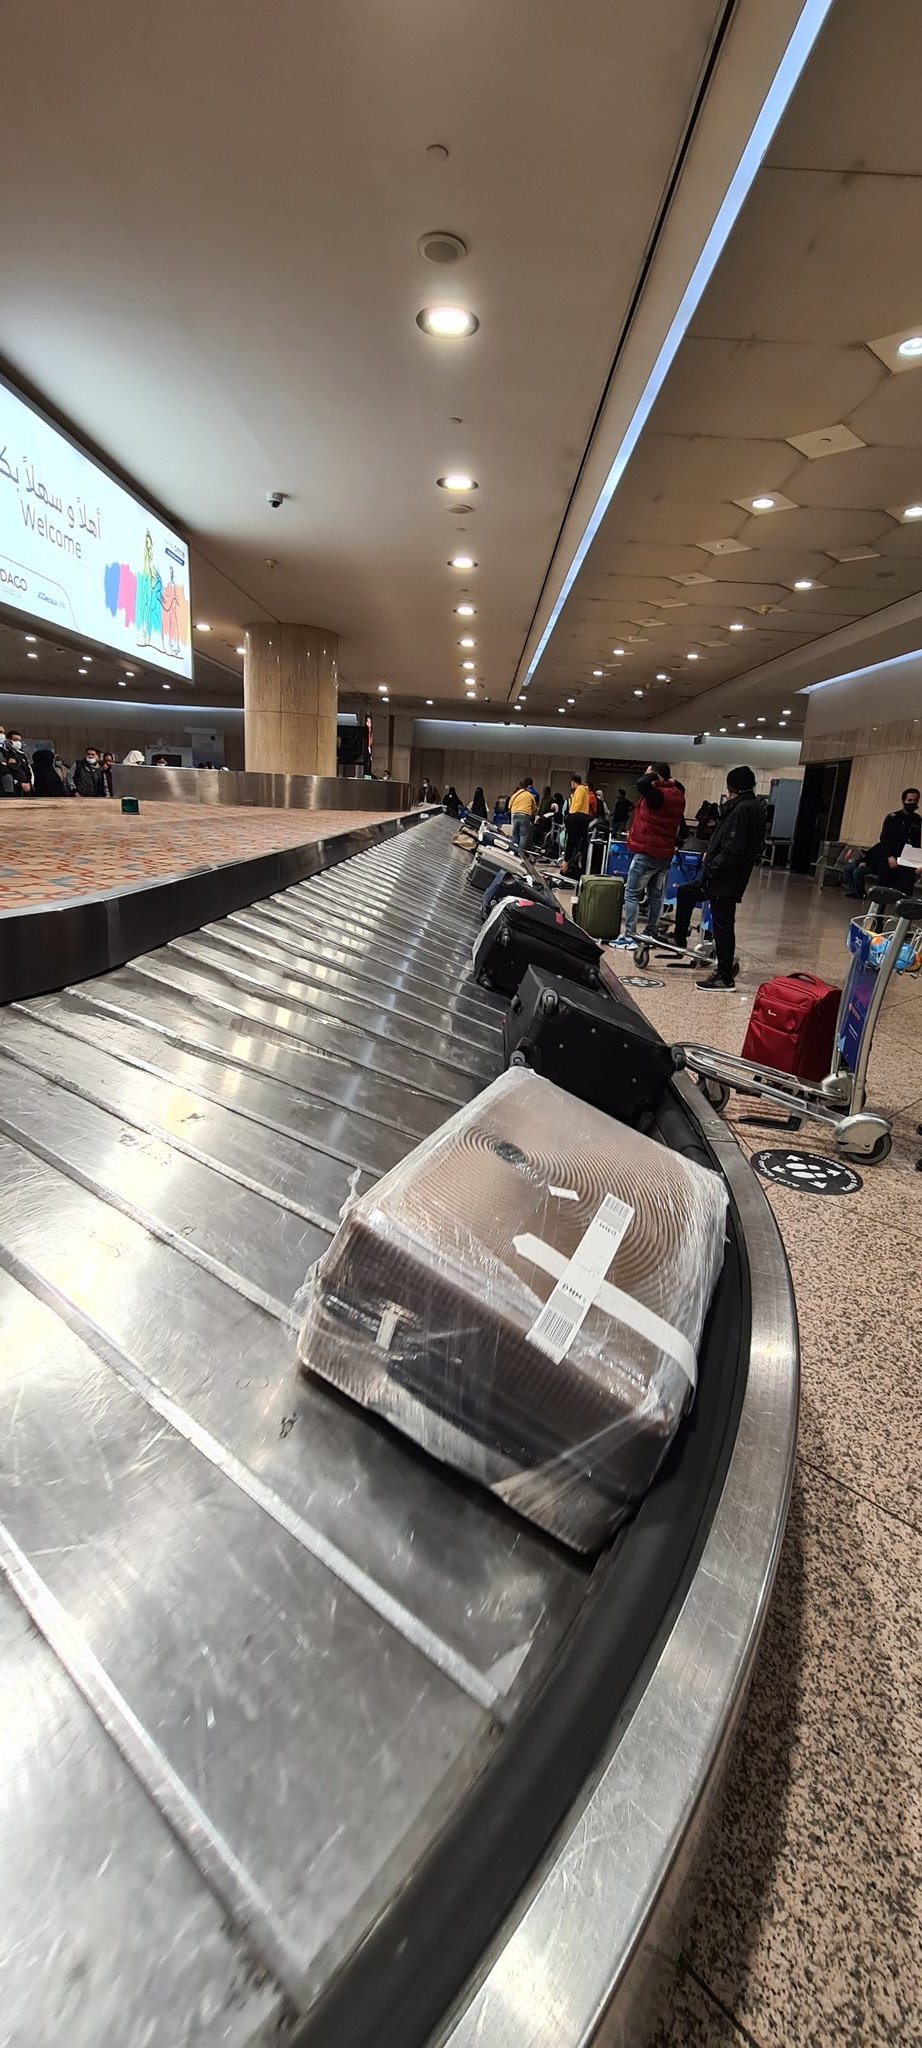 مسافرون لـ مطار الملك فهد: أين الأمتعة؟